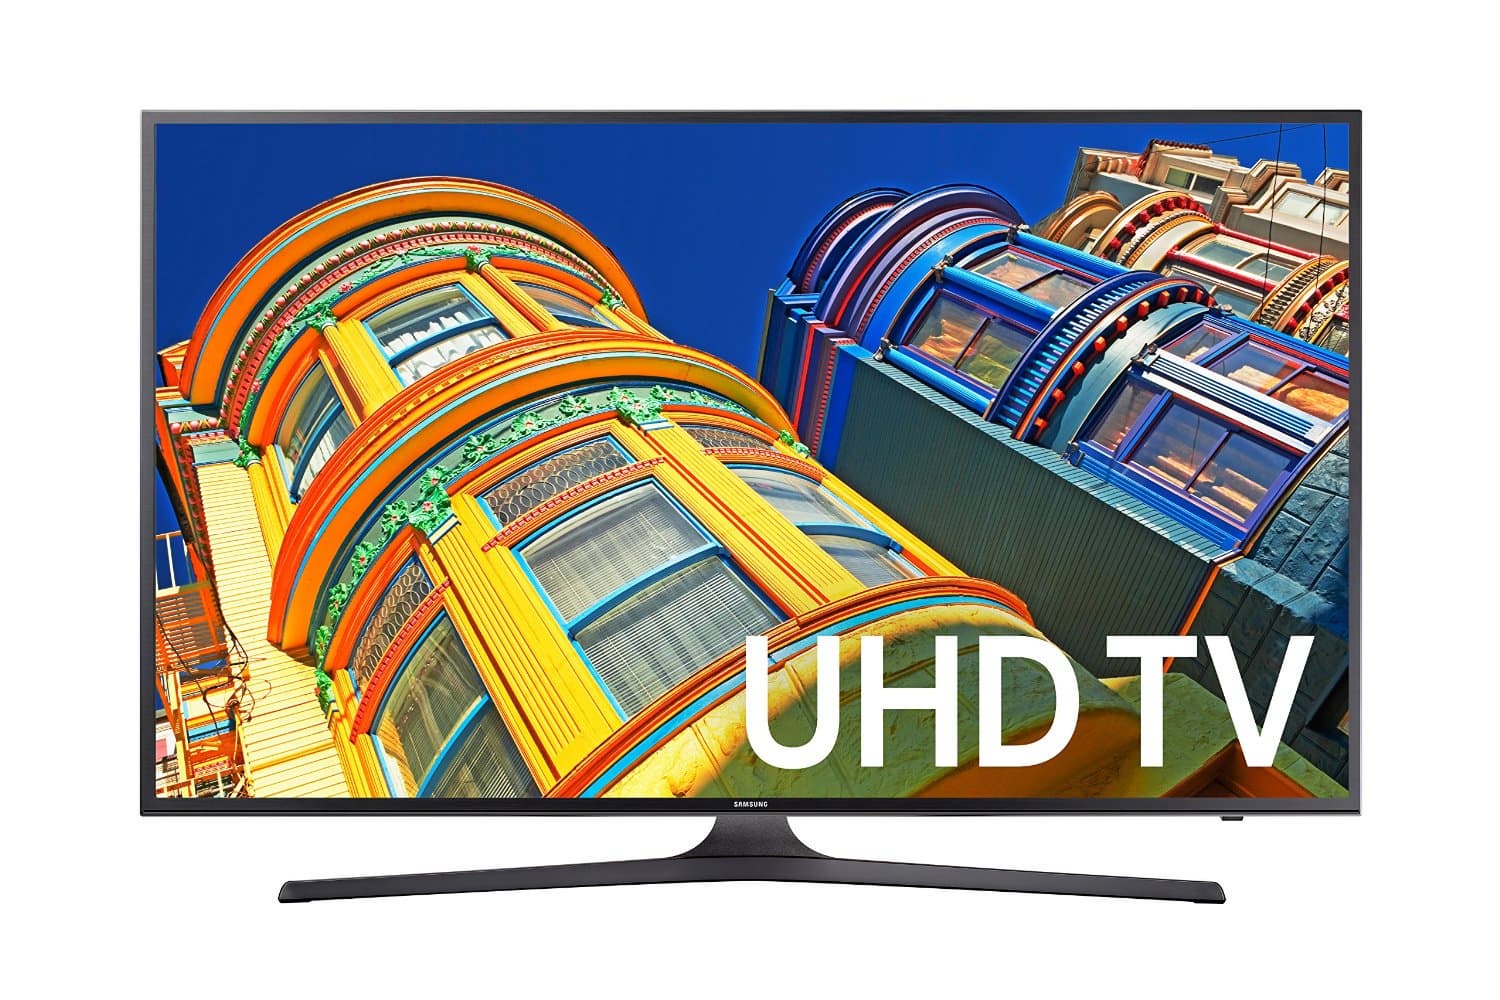 Samsung UN55KU6300 55_Inch 4K Ultra HD Smart LED TV _2016 Mo